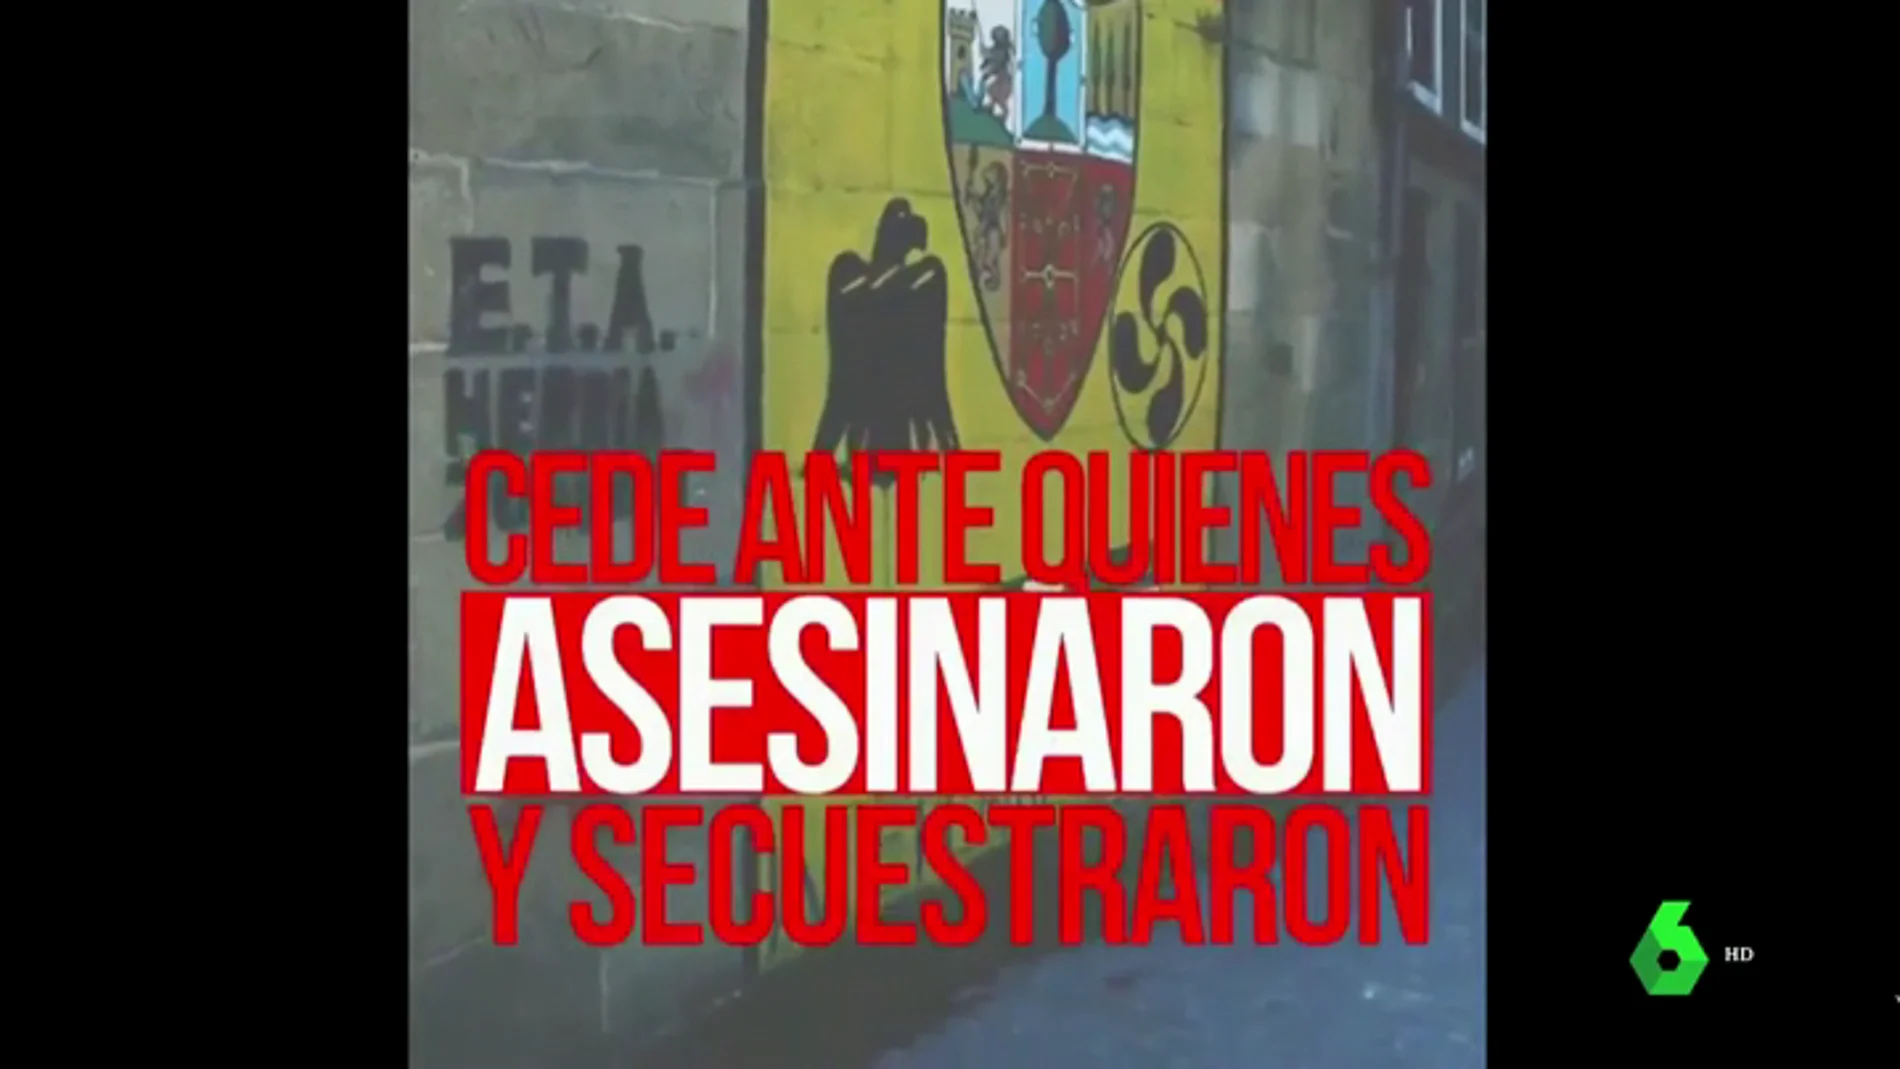 Ciudadanos difunde un vídeo muy duro contra Pedro Sánchez: "Cede ante quienes asesinaron y secuestraron"